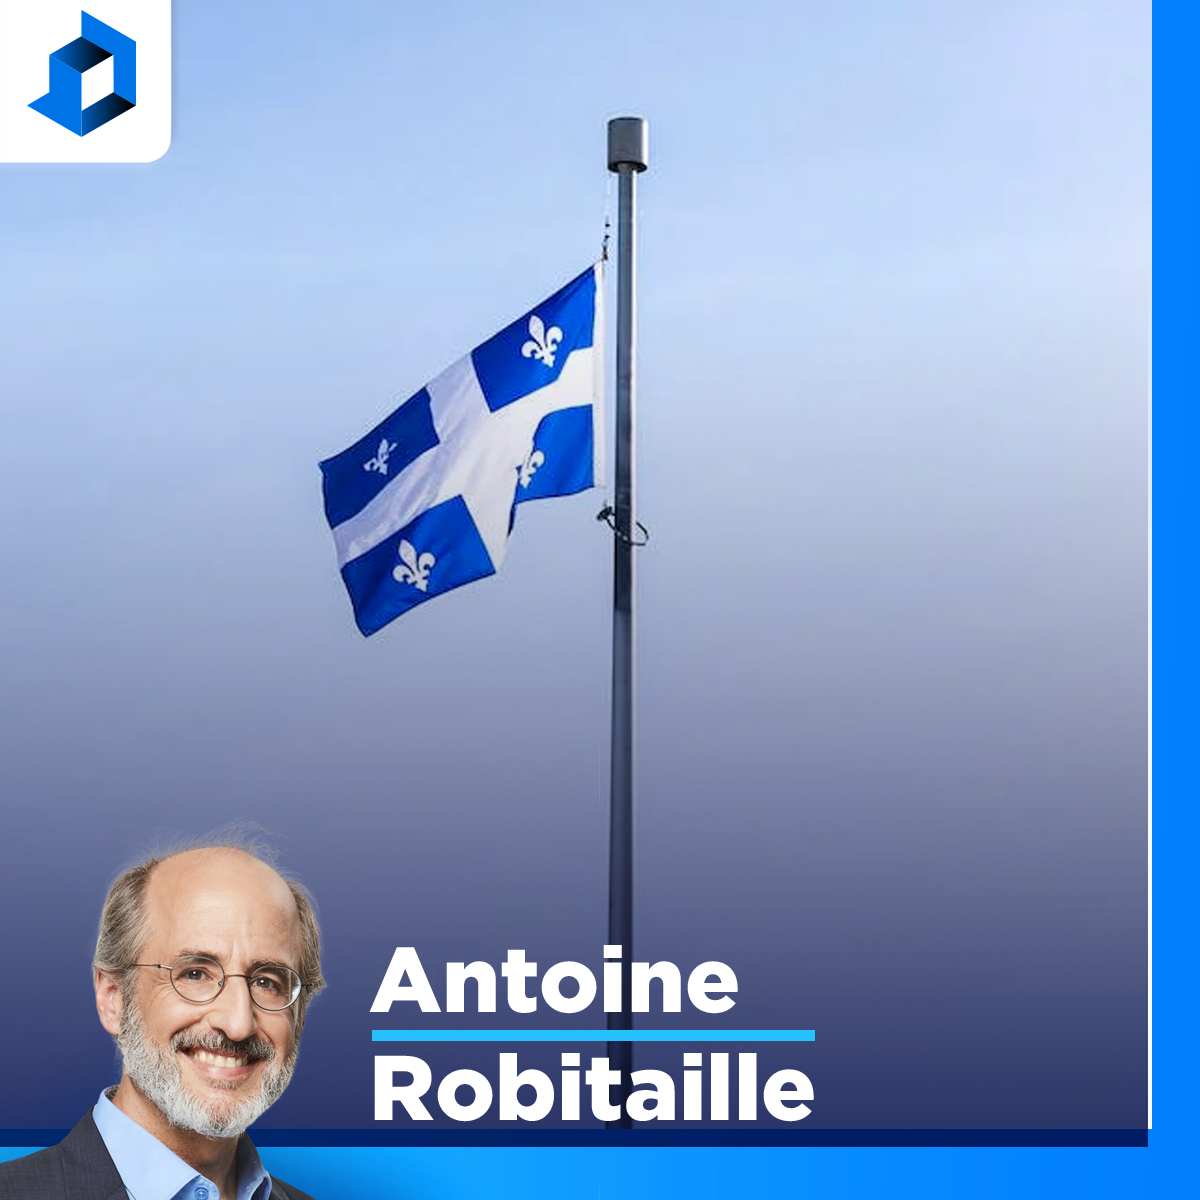 Jean Lapointe, personnage important de la mémoire politique québécoise